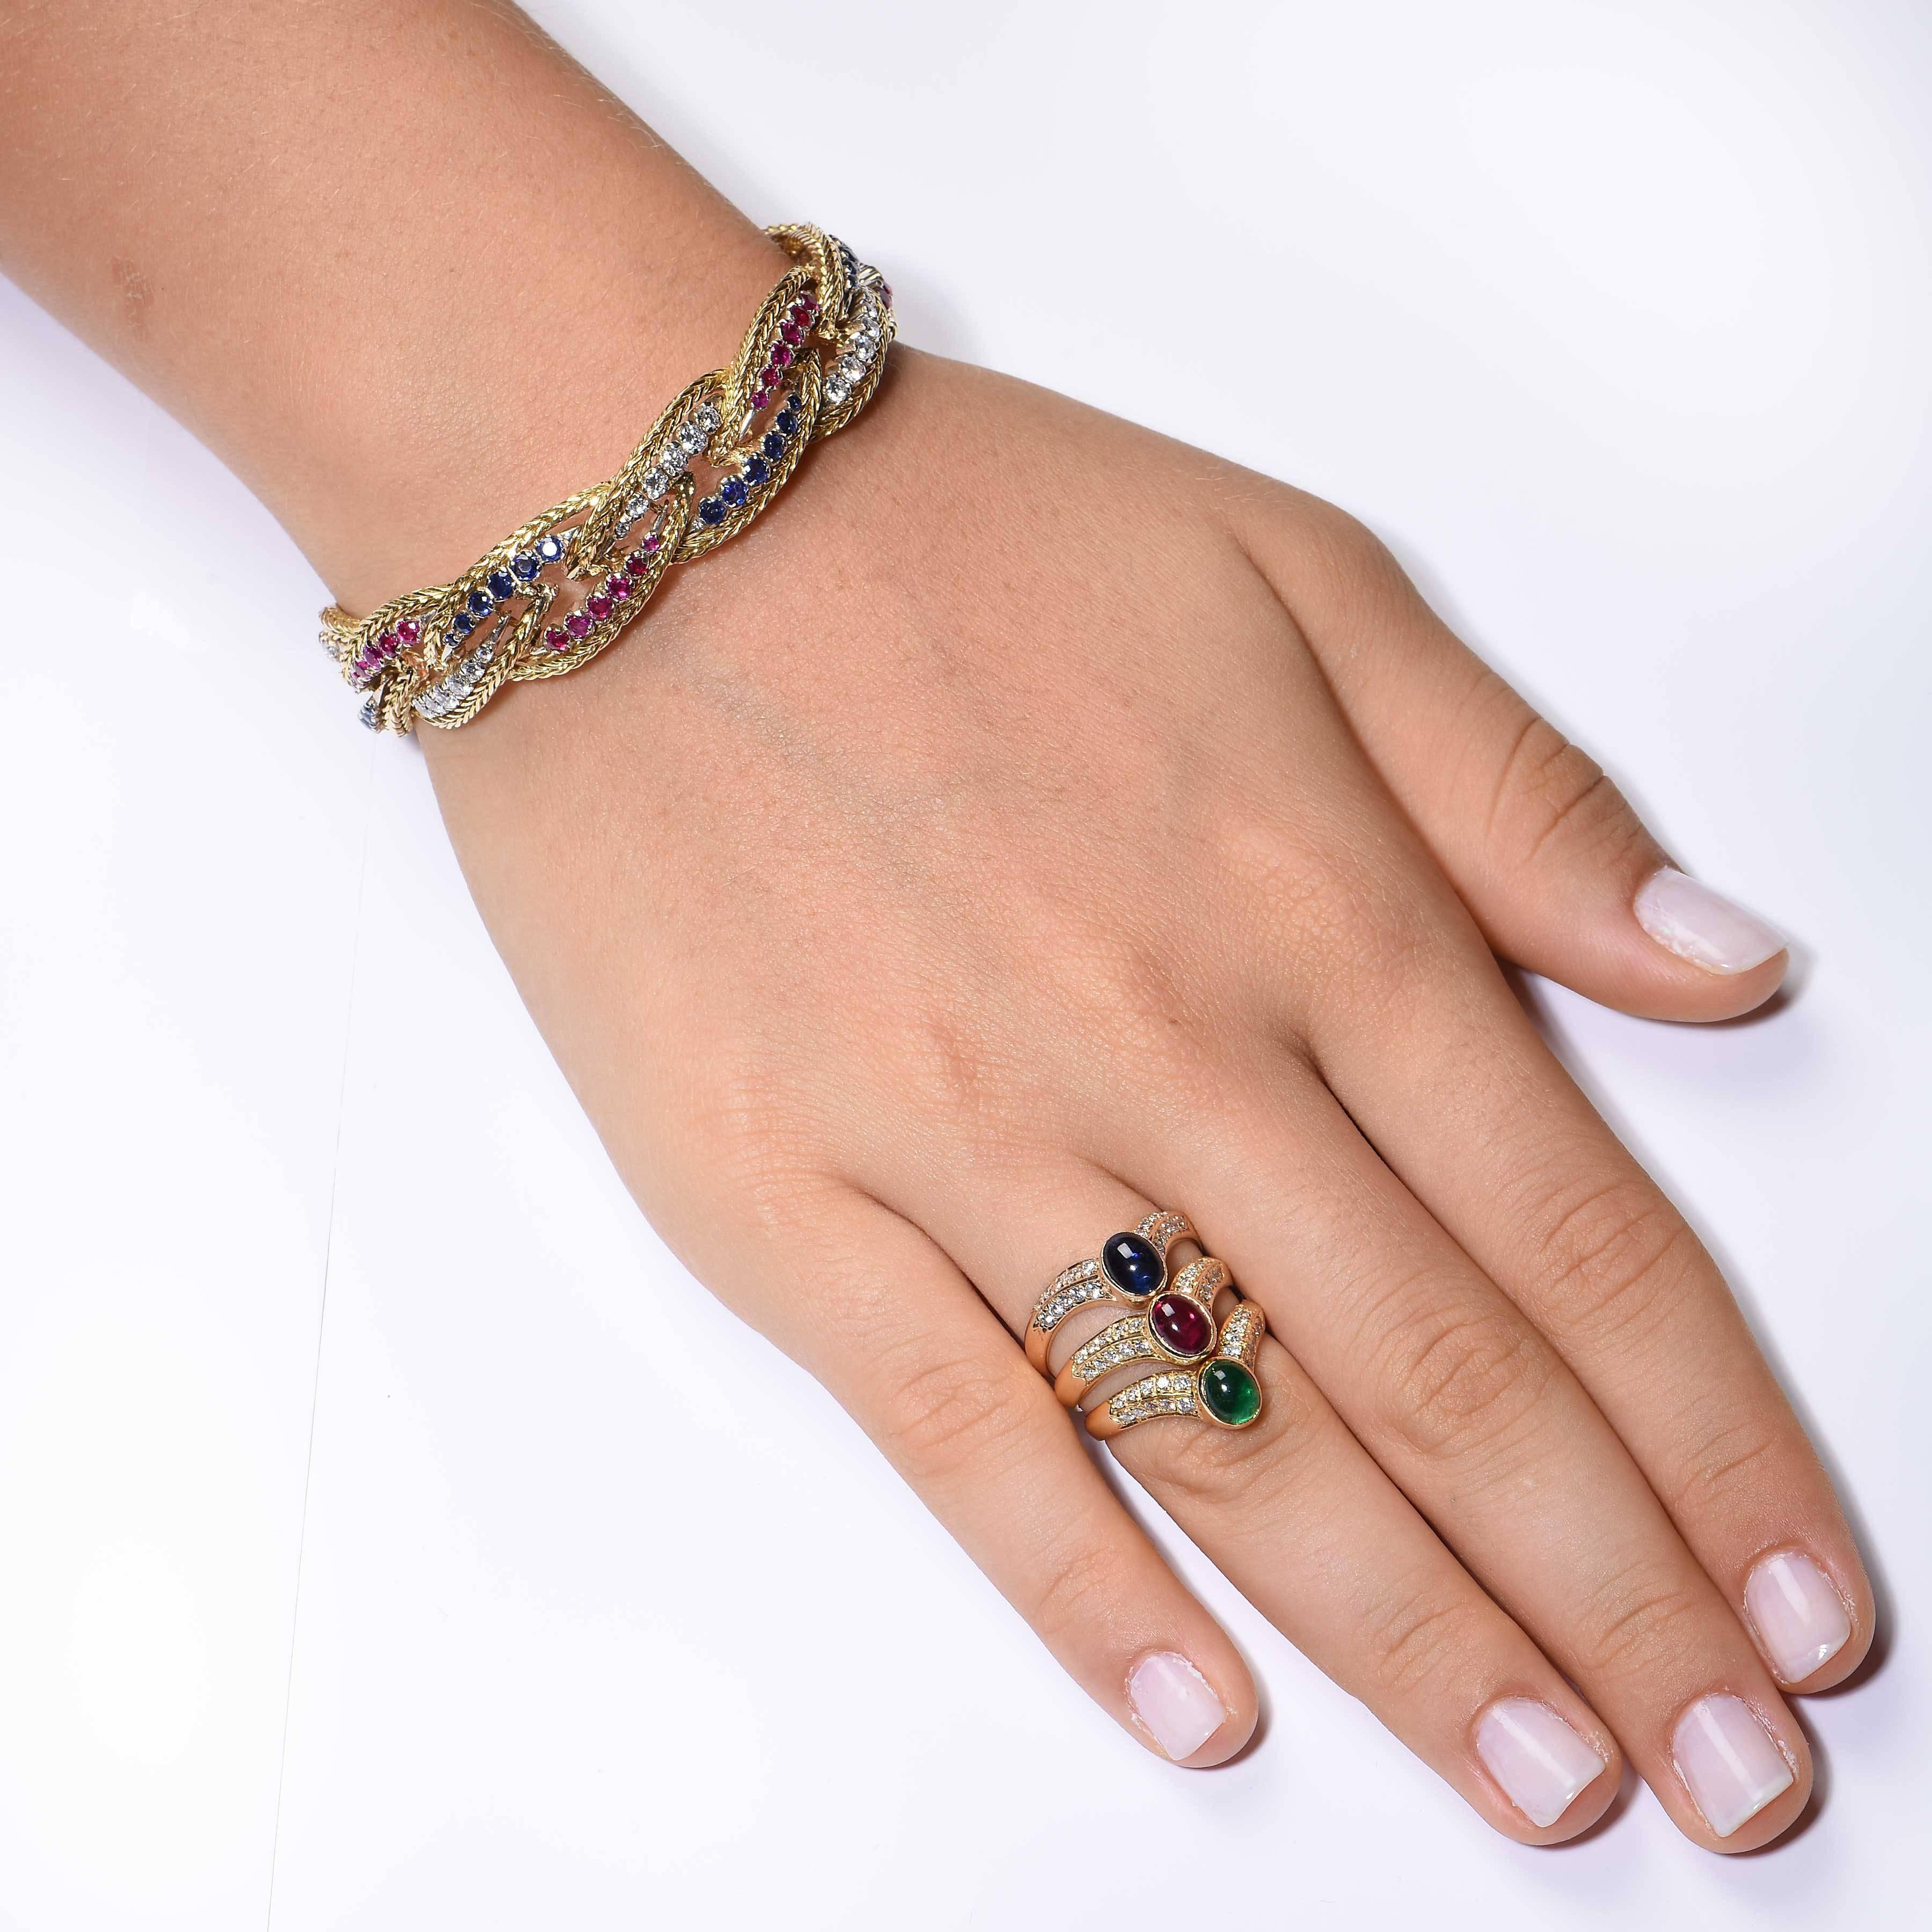 Dieses wunderschöne Armband im geflochtenen Design der 1970er Jahre ist mit Rubinen, Saphiren und Diamanten besetzt. Die runden Diamanten im Brillantschliff wiegen etwa 2 Karat. Außerdem ist er mit Rubinen und Saphiren verziert. 

Länge: 6 3/4